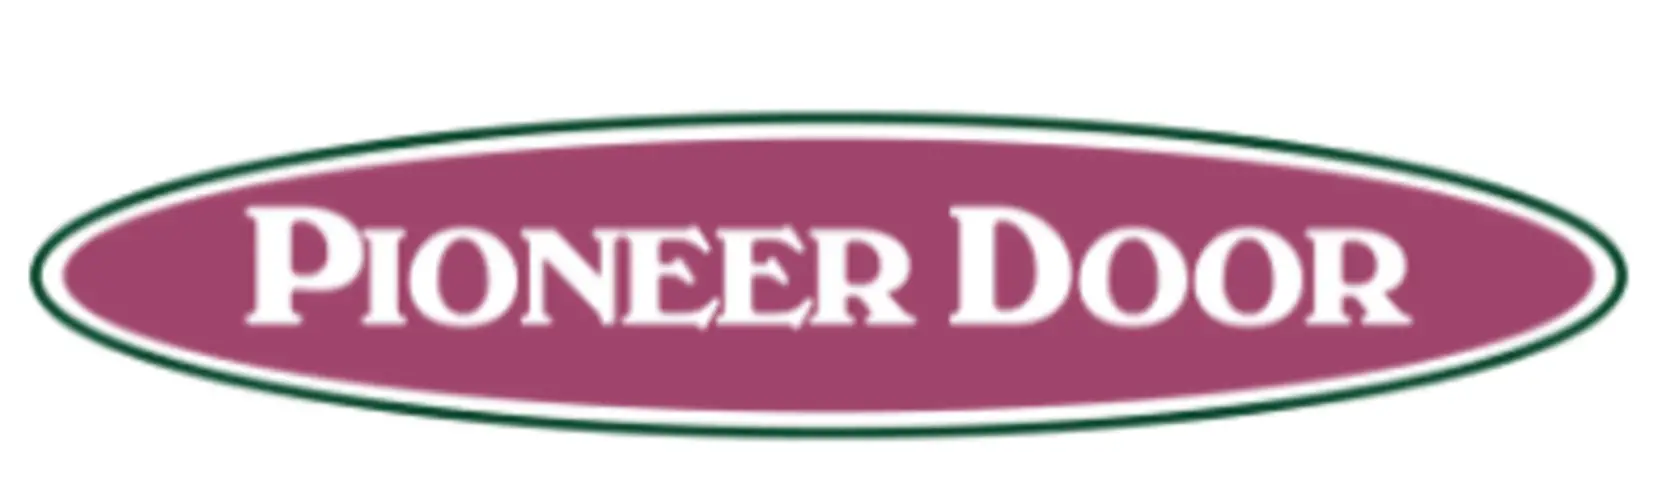 Pioneer Door Co